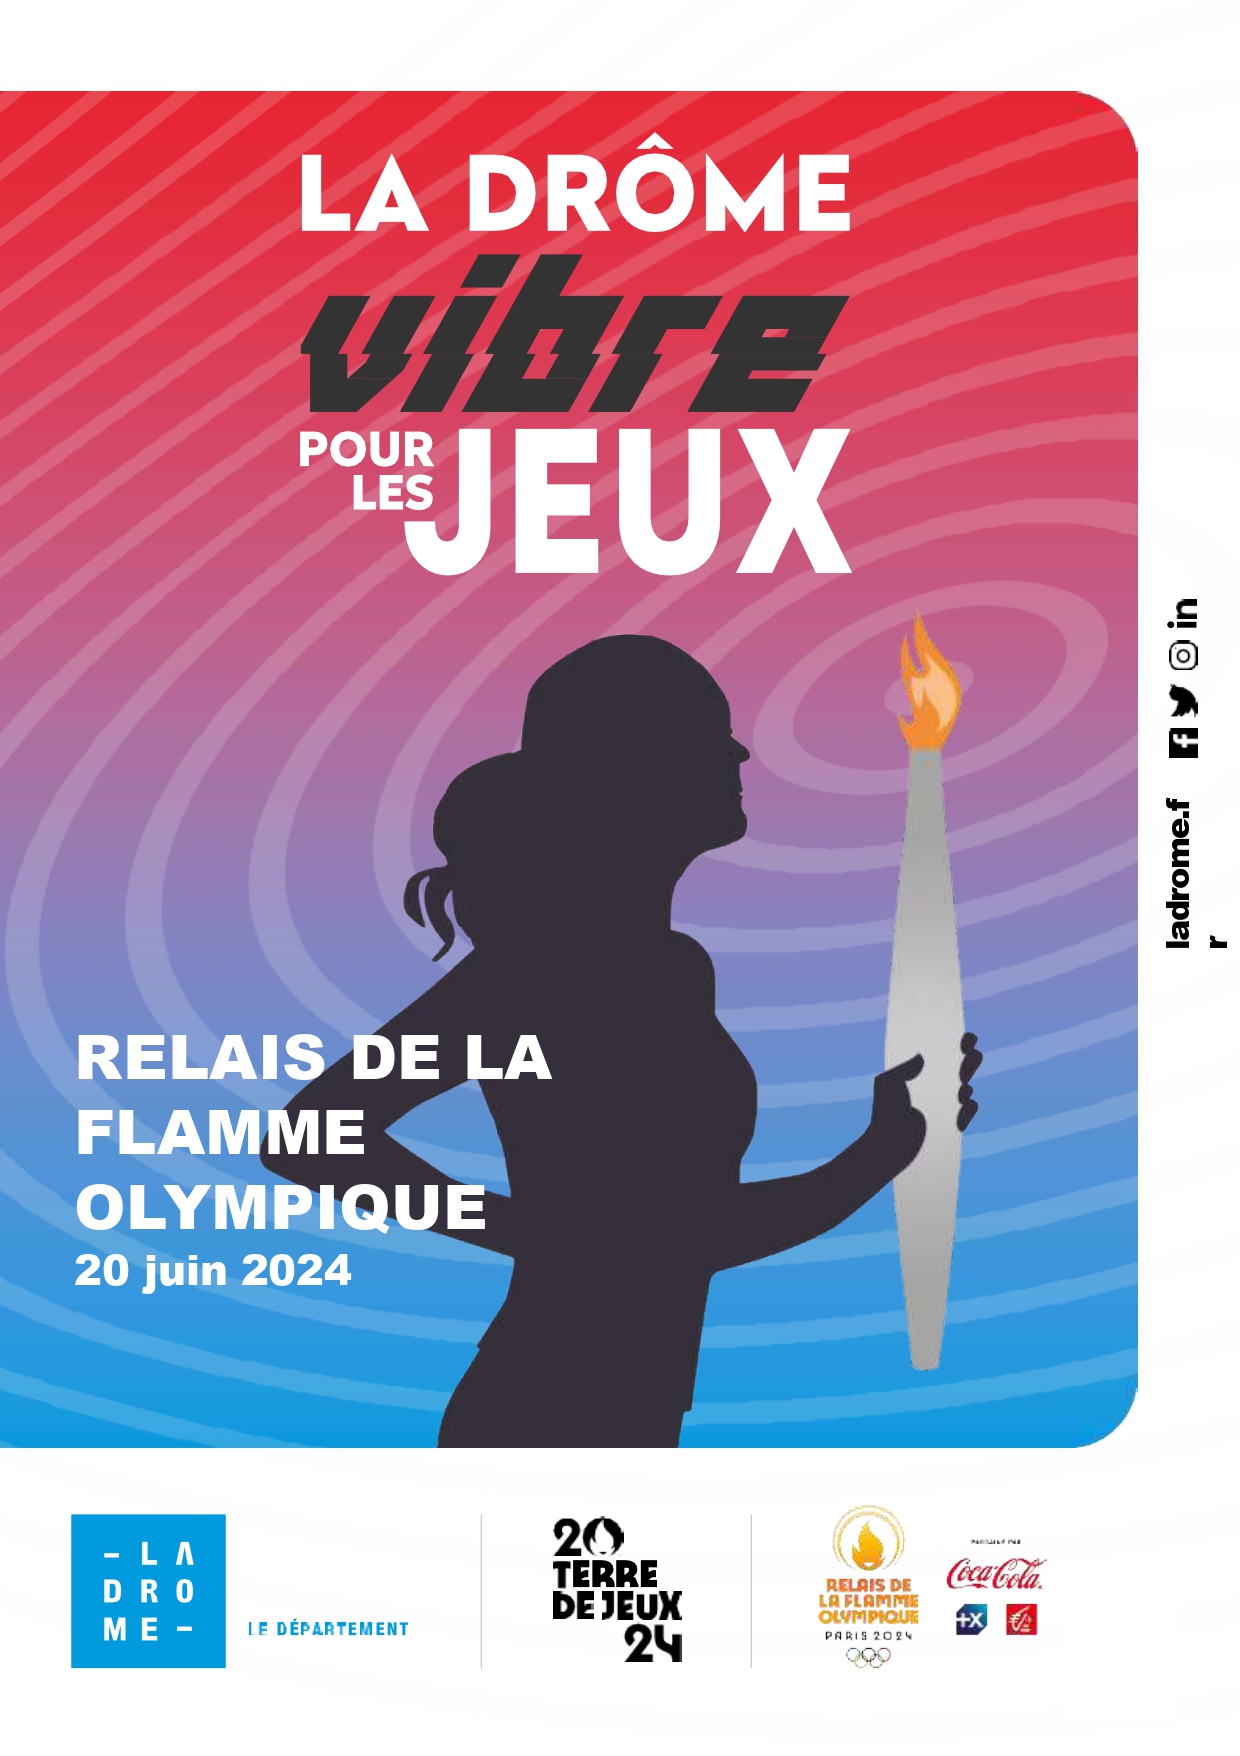 Passage de la flamme olympique en Drôme le 20 juin 2024